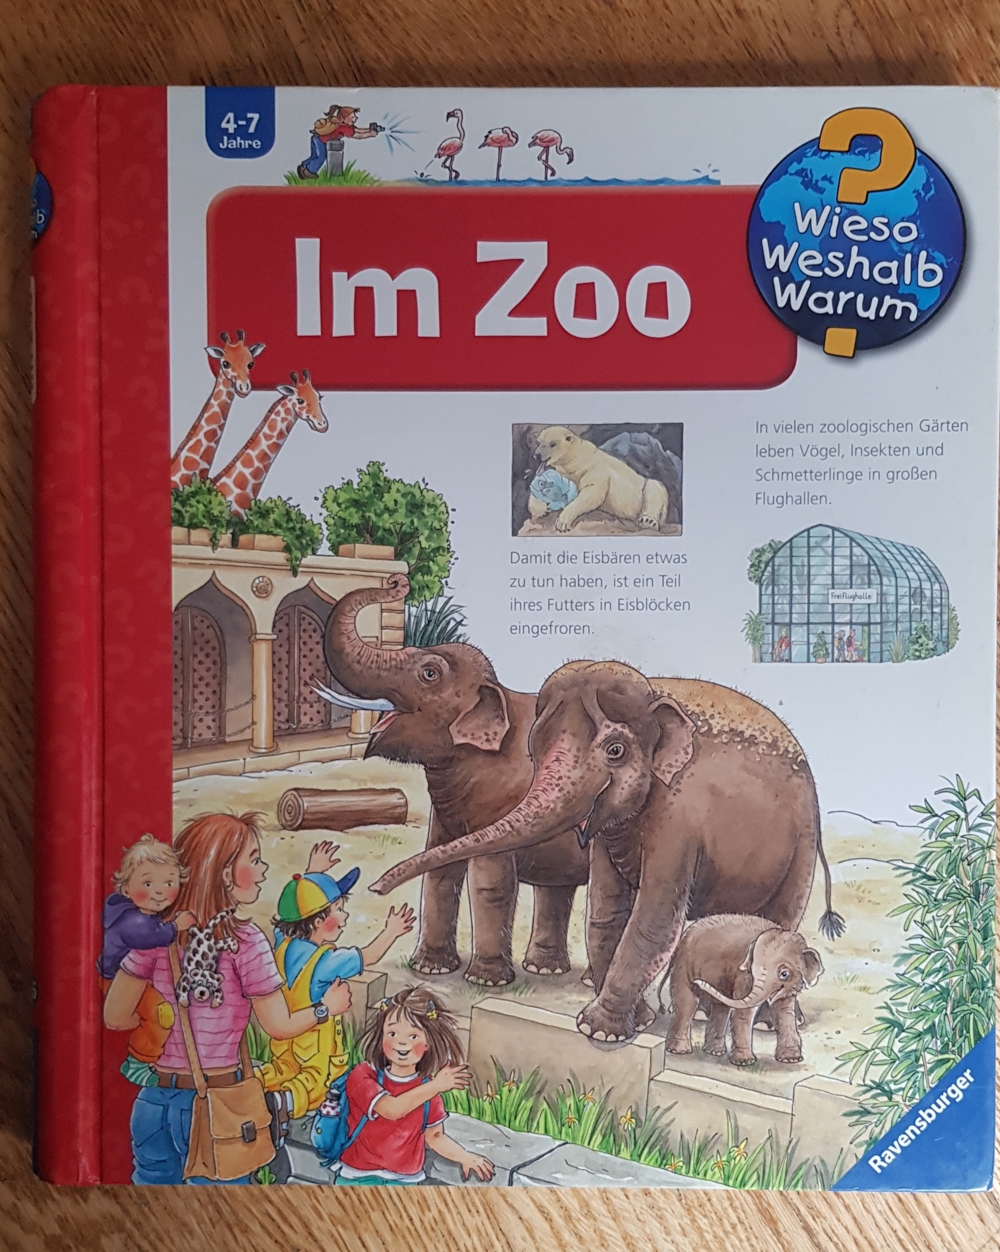 Buch aus Serie "Wieso Weshalb Warum", Titel: Im Zoo